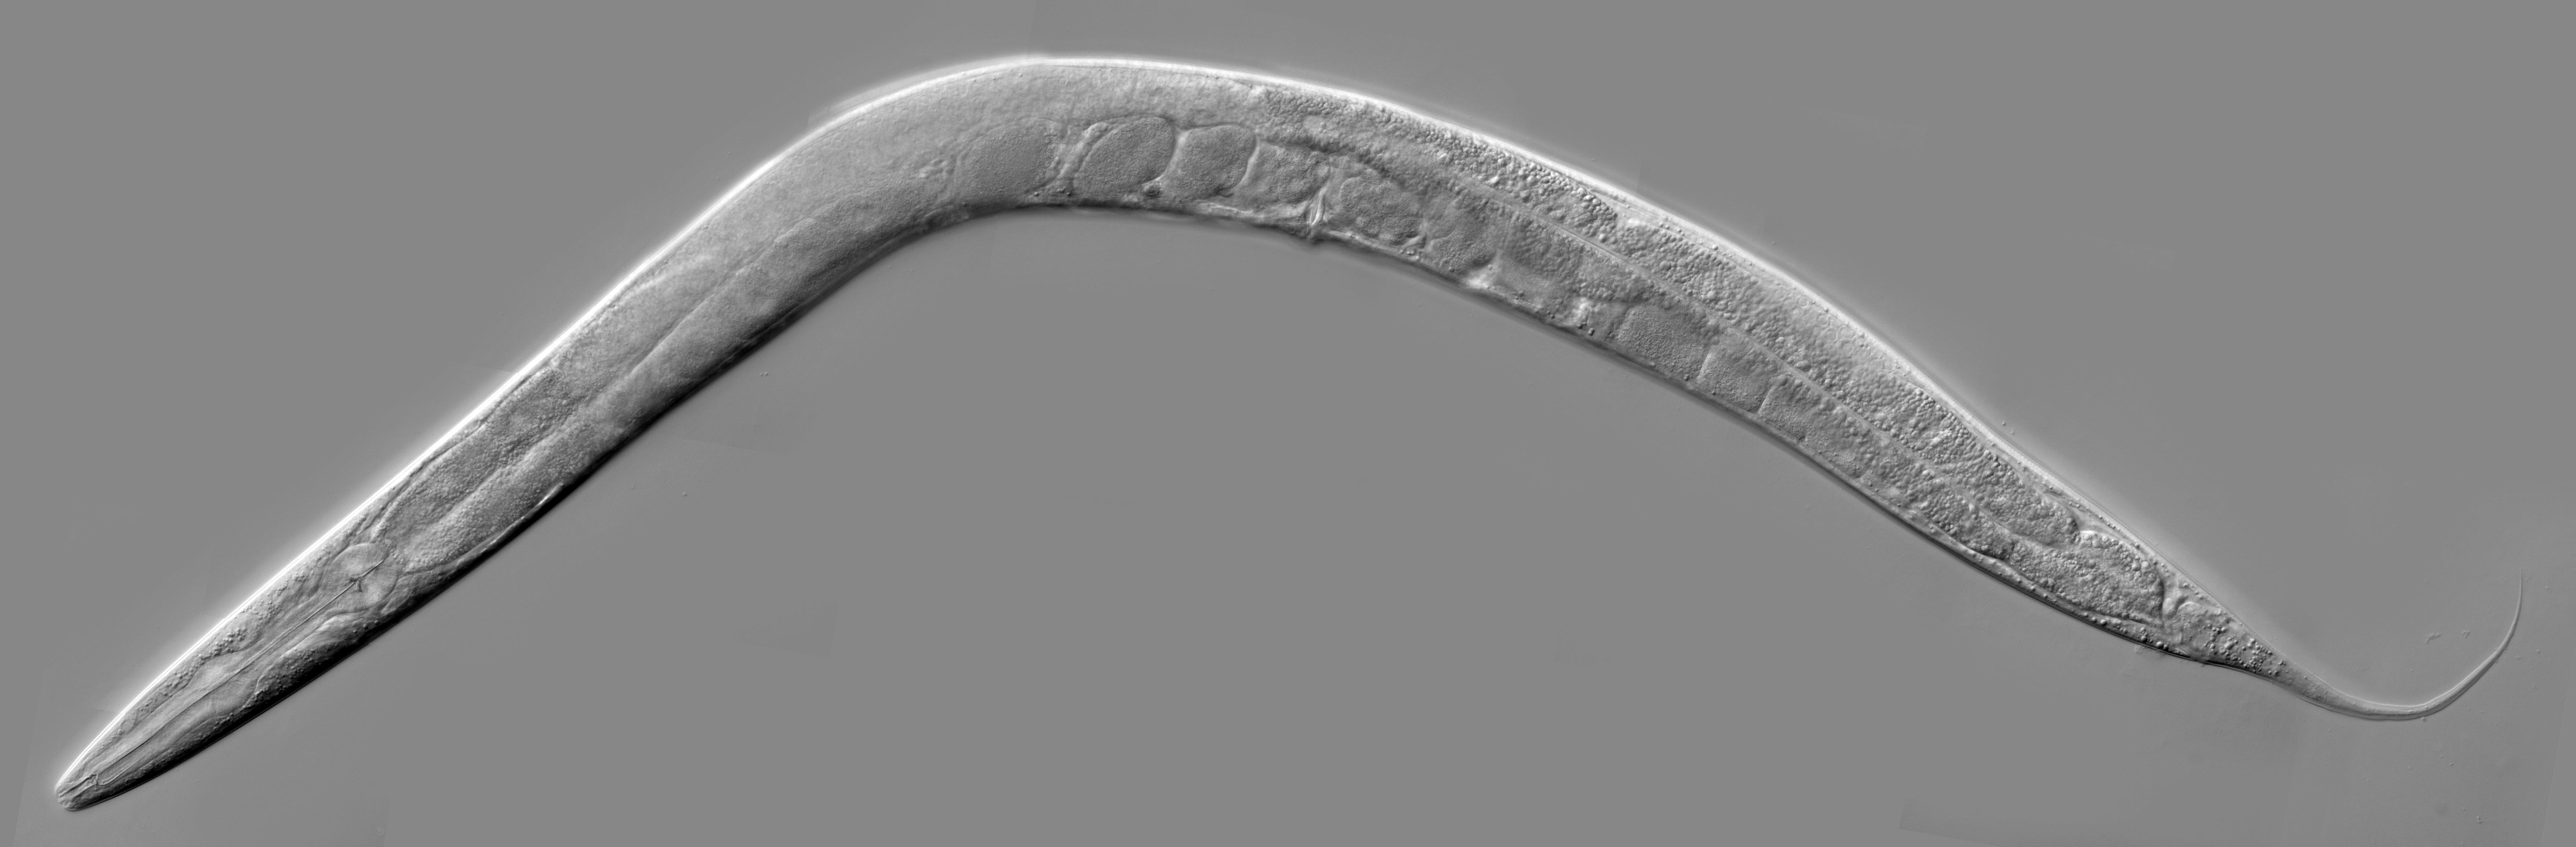 O C. elegans. (Fonte: Kbradnam/Wikipedia/Reprodução.)